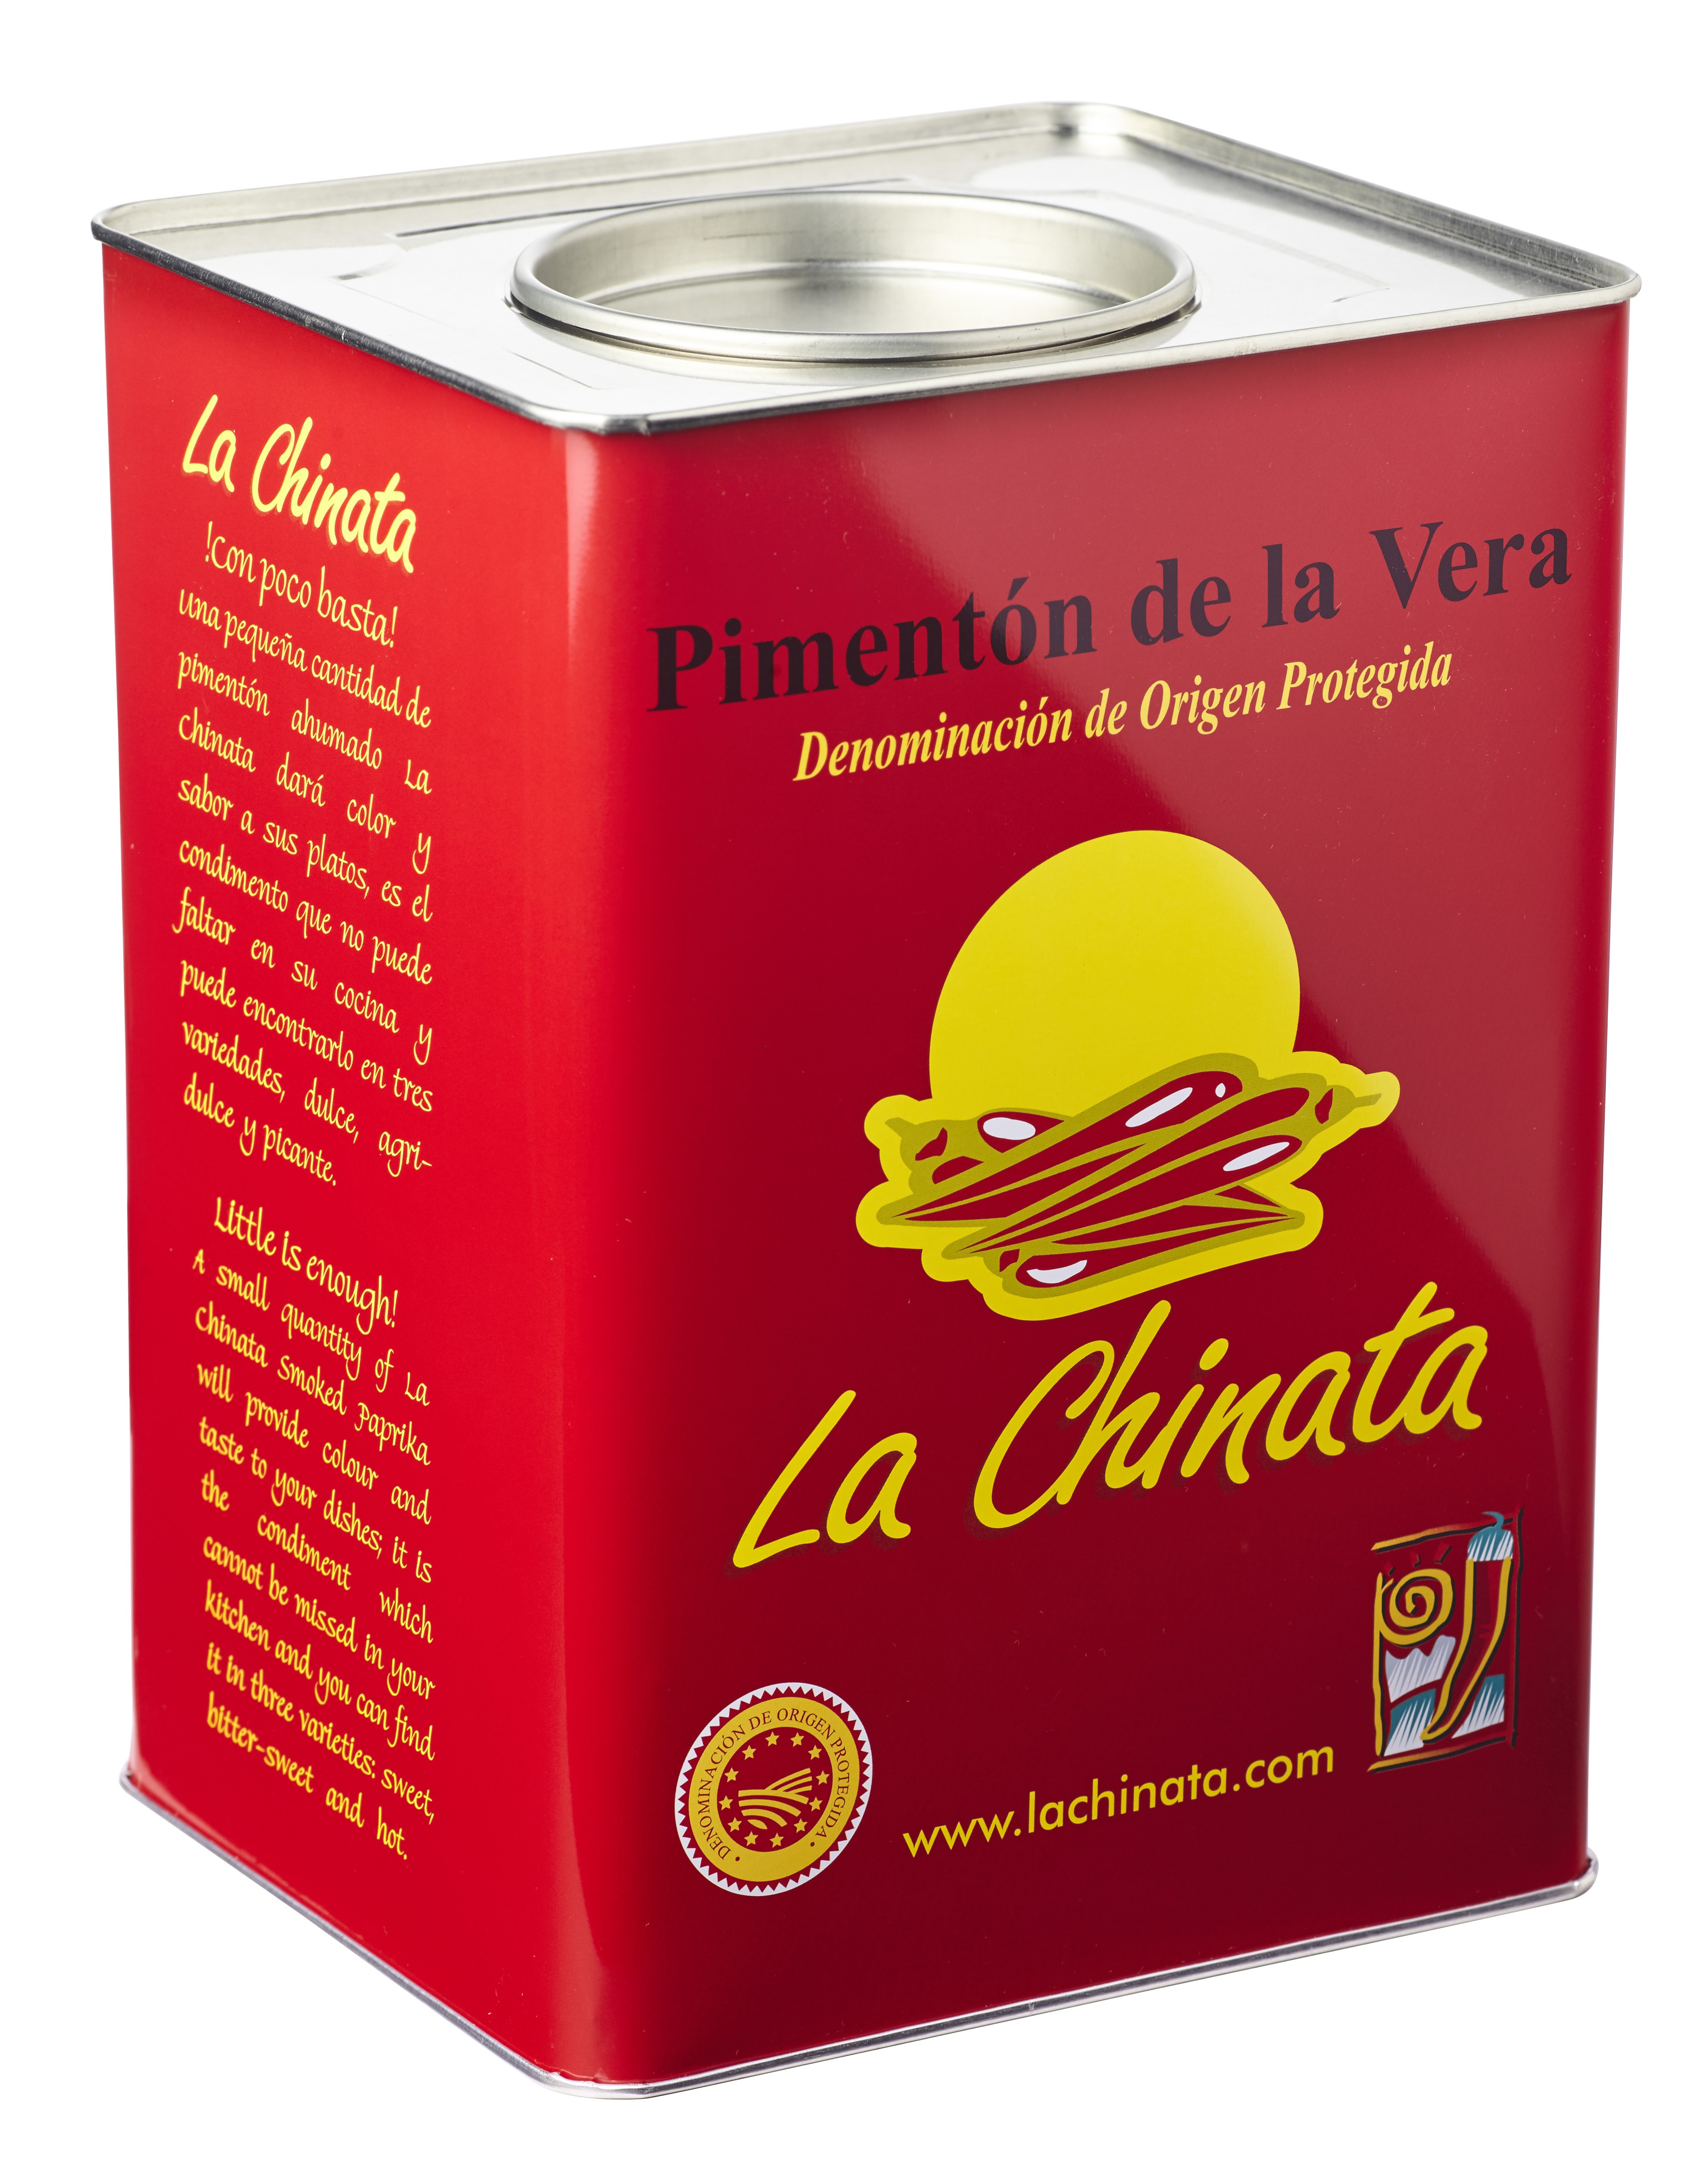 Hot Smoked Paprika Powder "La Chinata" 4,5 Kg. Tin